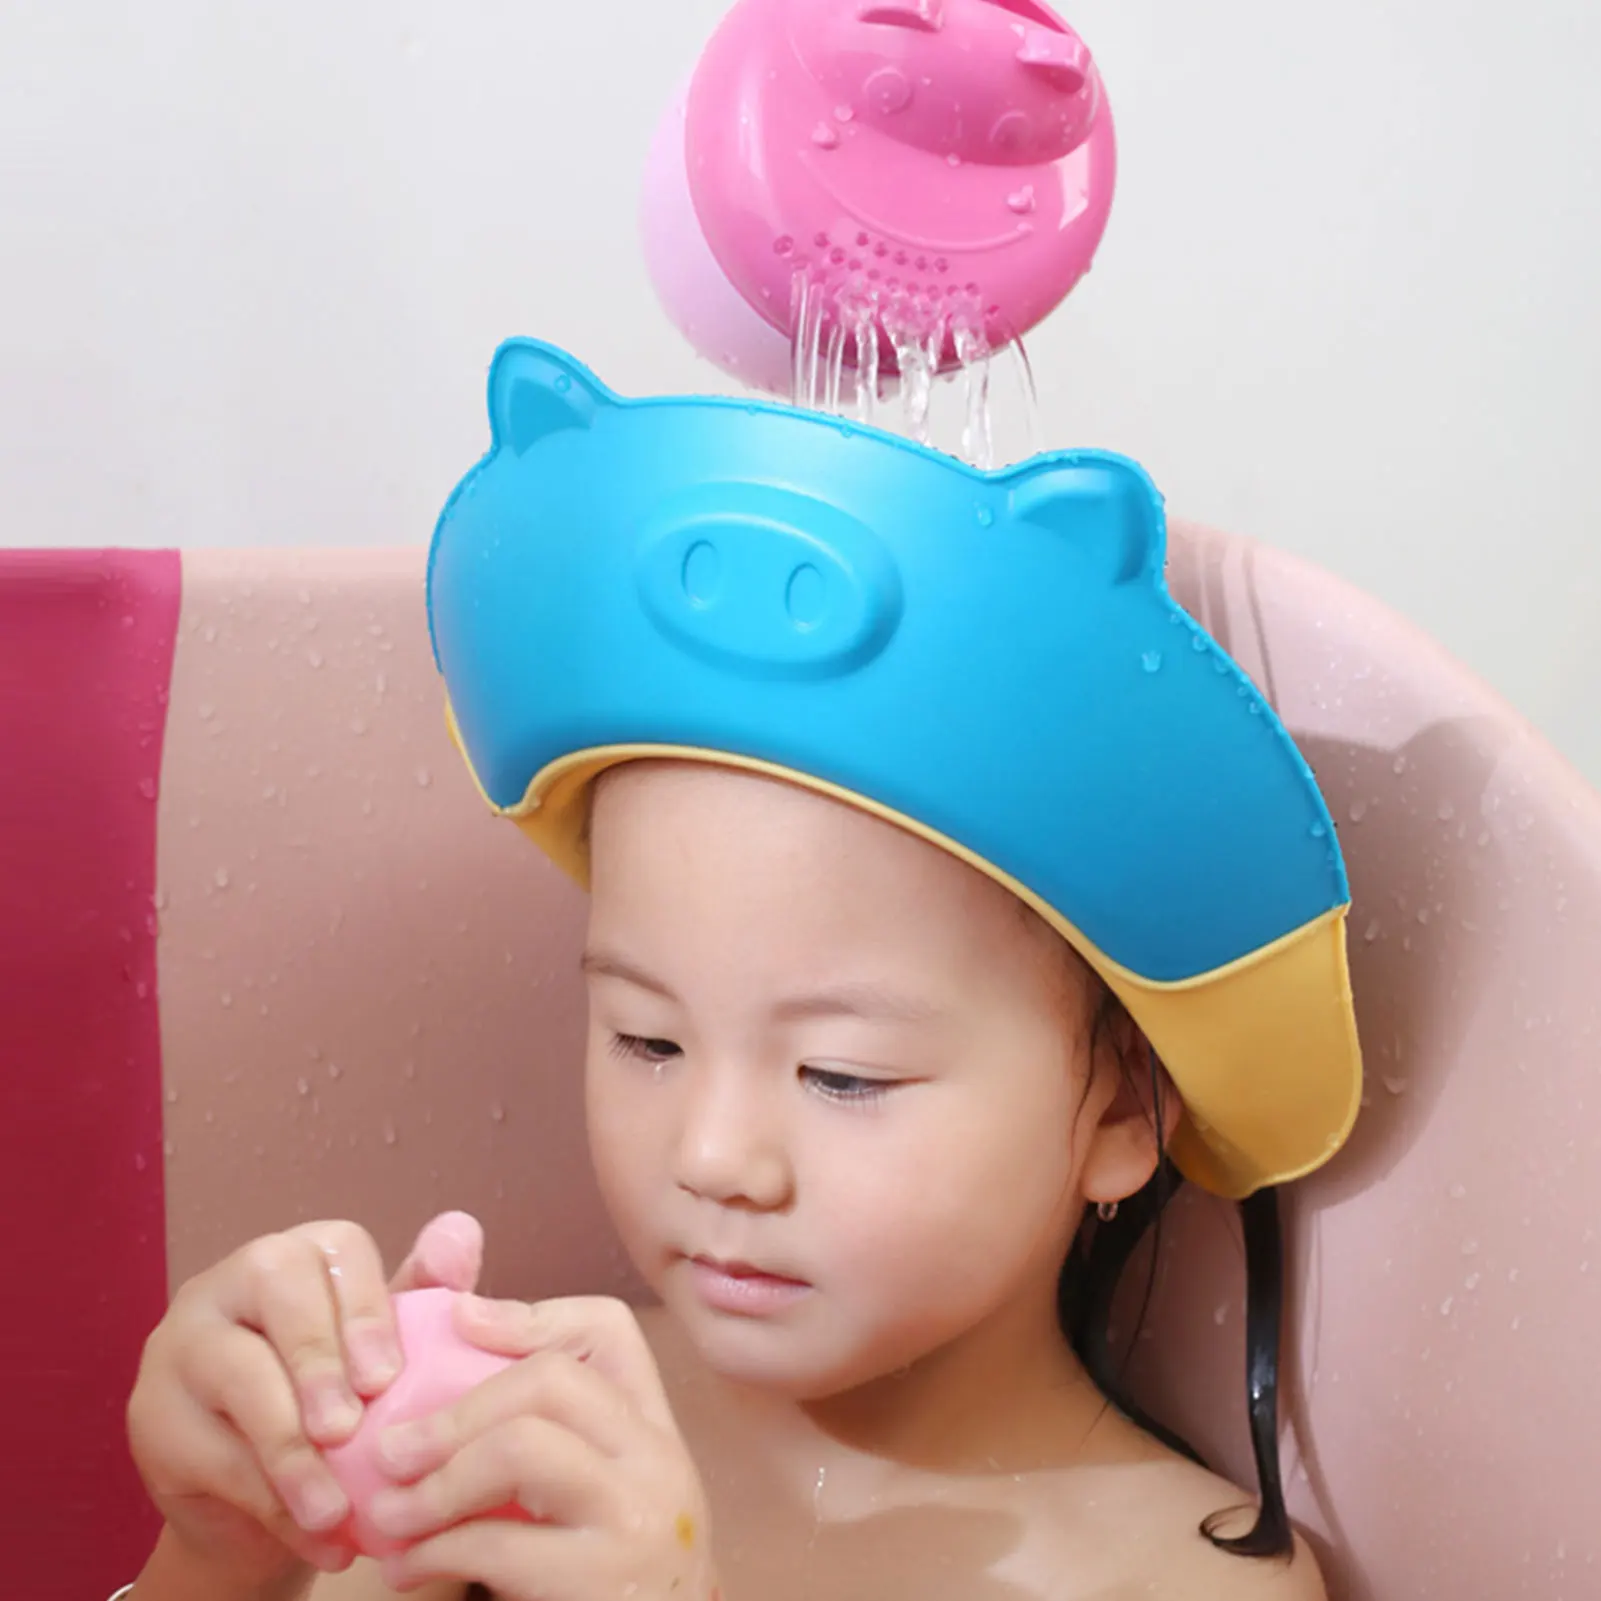 Baby Safe Shampoo Shower Caps Ajustável Banho Proteção Caps Hat para o Bebê Recém-nascido Infantil Wash Hair Cover Shield Ear Protector